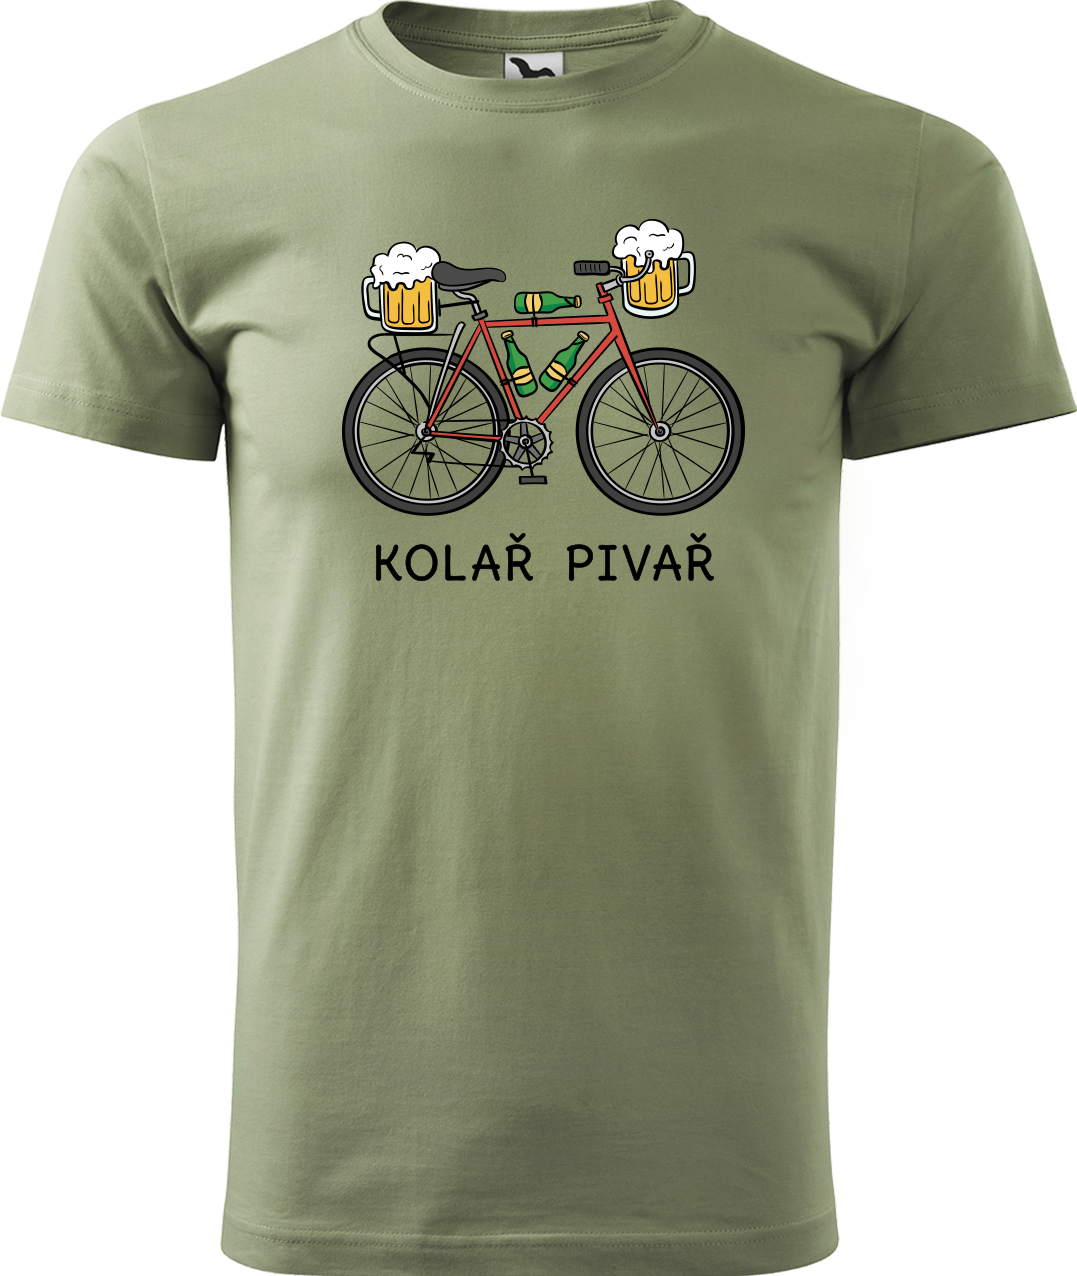 Pánské tričko s kolem - Kolař pivař Velikost: 4XL, Barva: Světlá khaki (28)